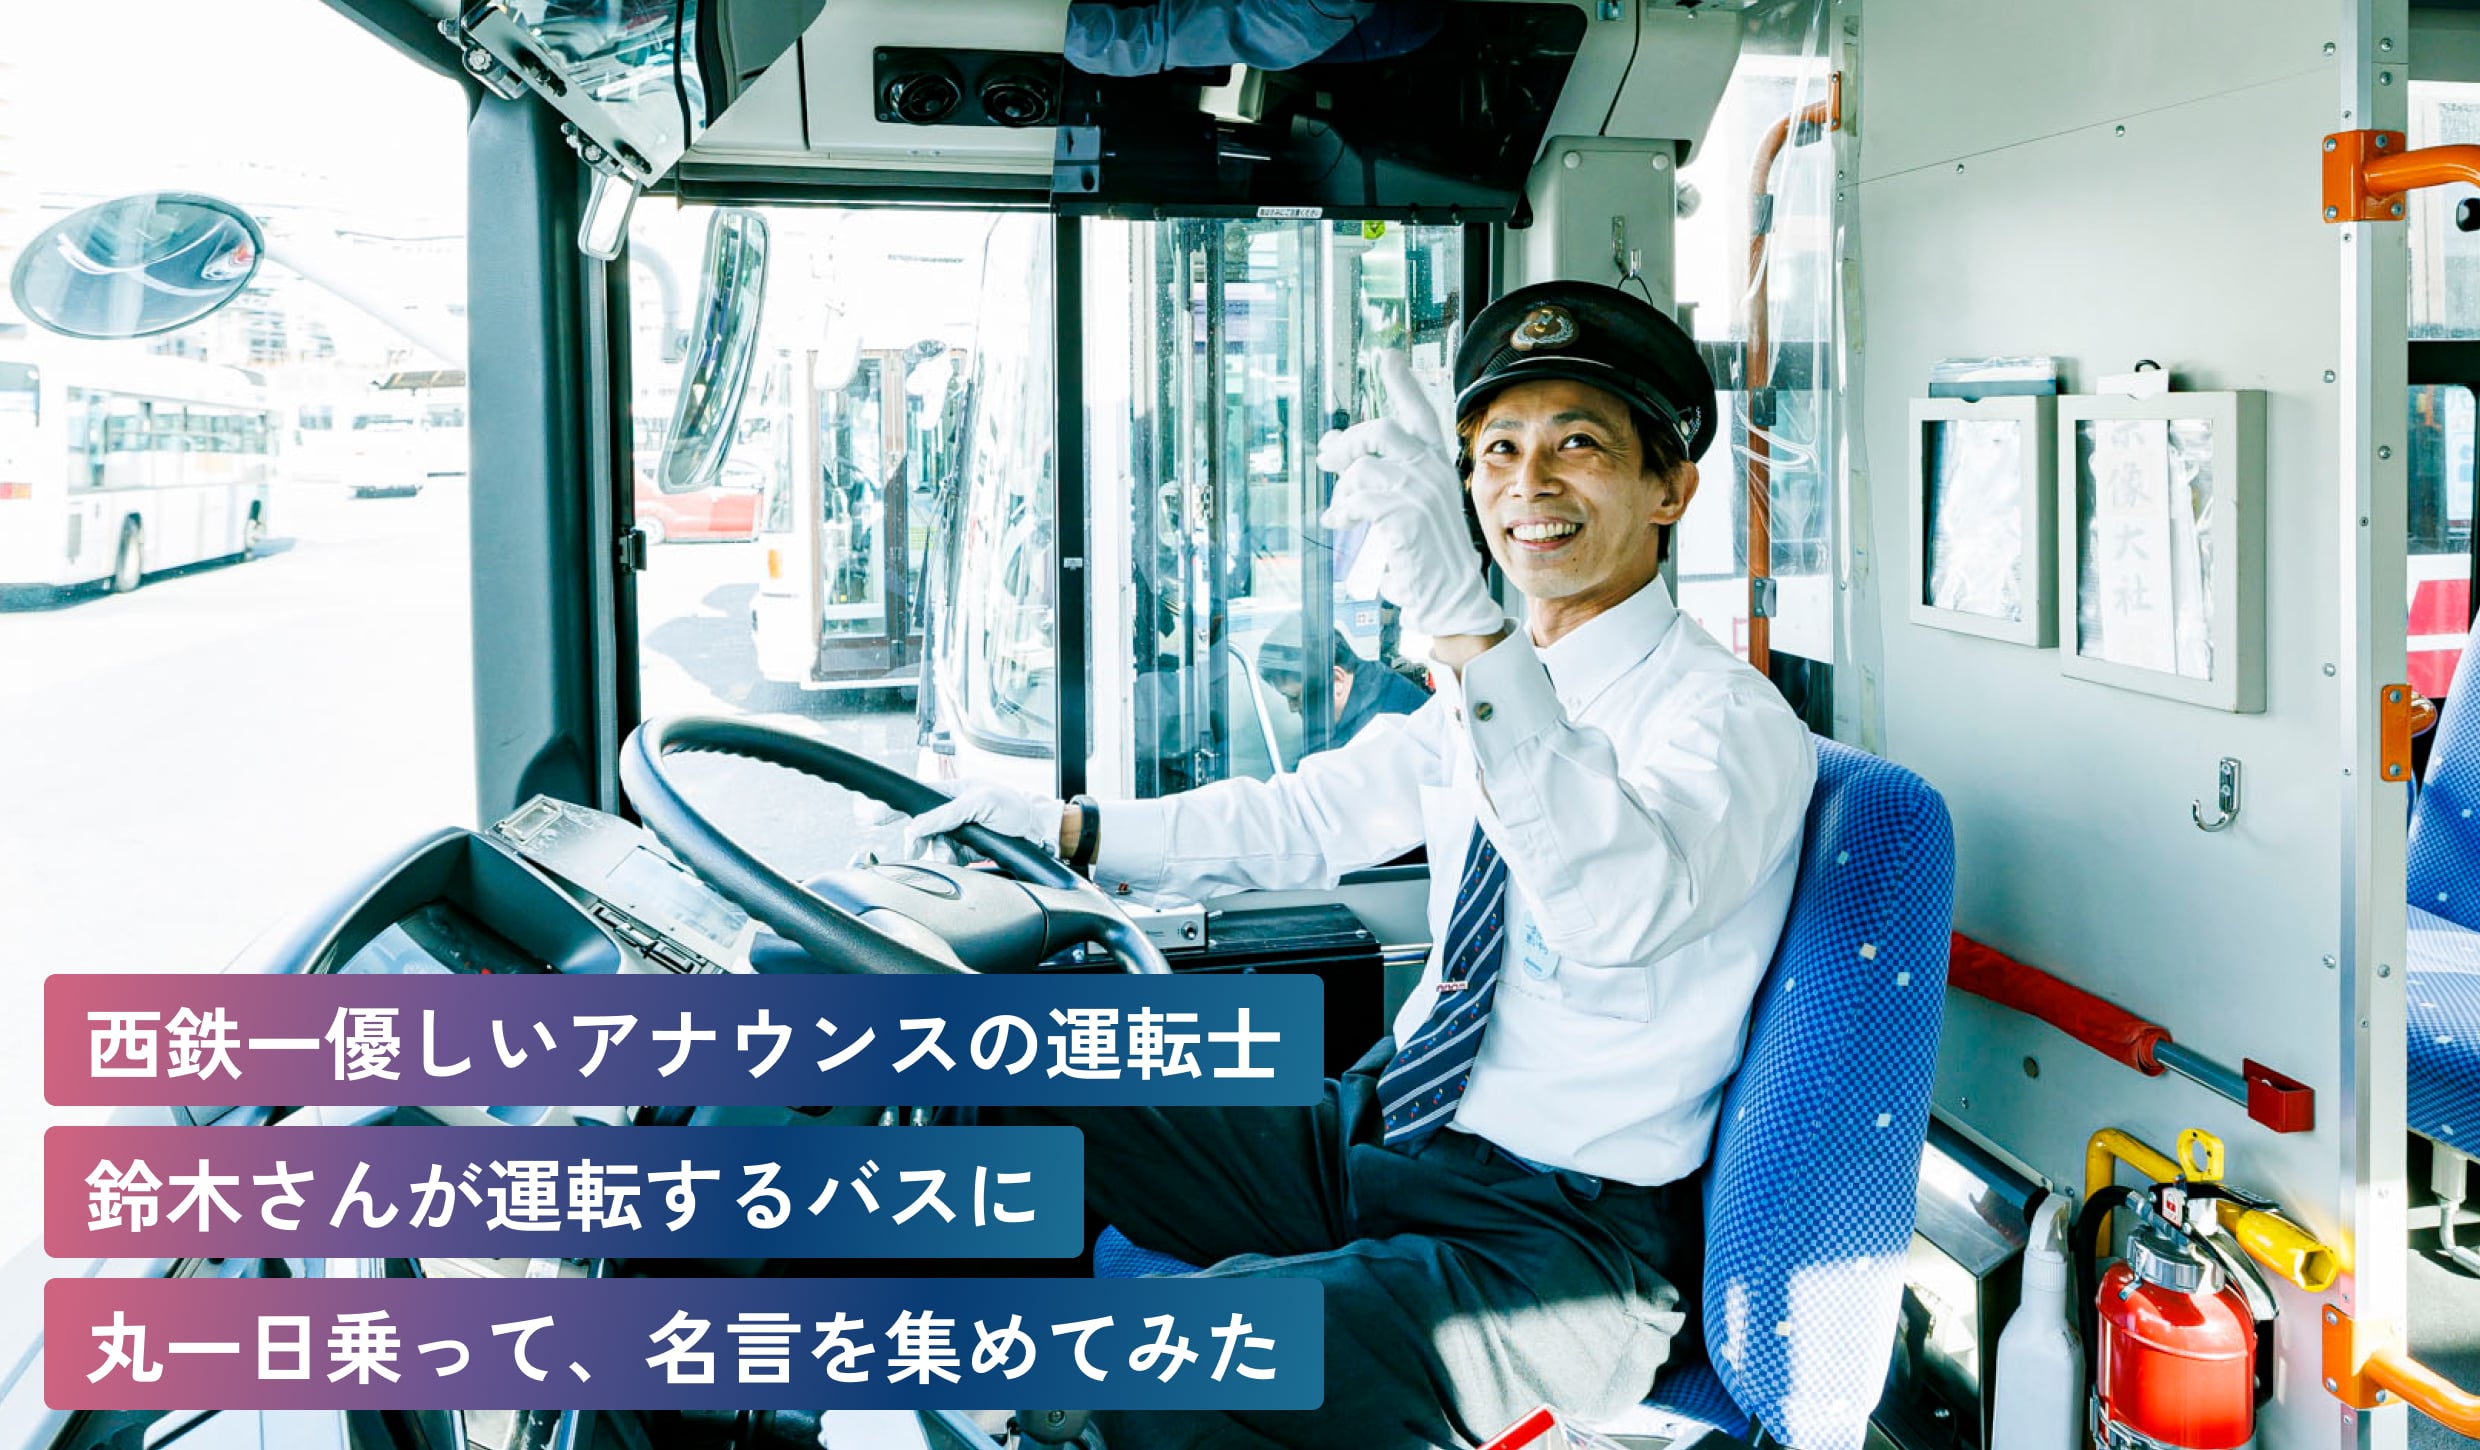 西鉄一優しいアナウンスの運転士鈴木さんが運転するバスに丸一日、乗って名言を集めてみた